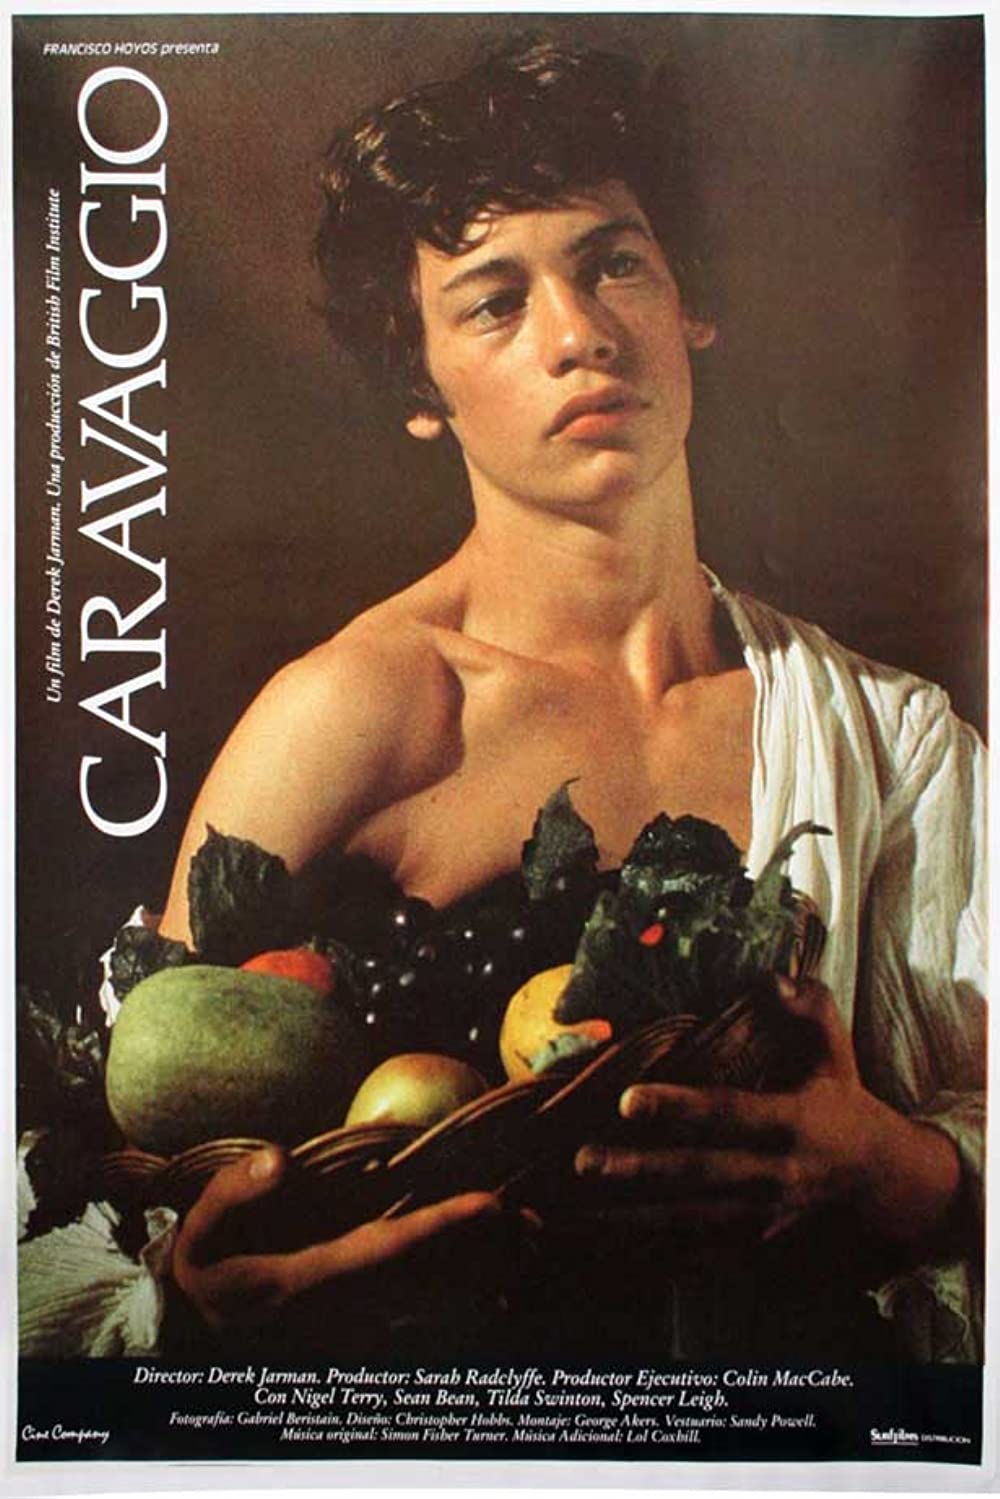 Filmbeschreibung zu Caravaggio